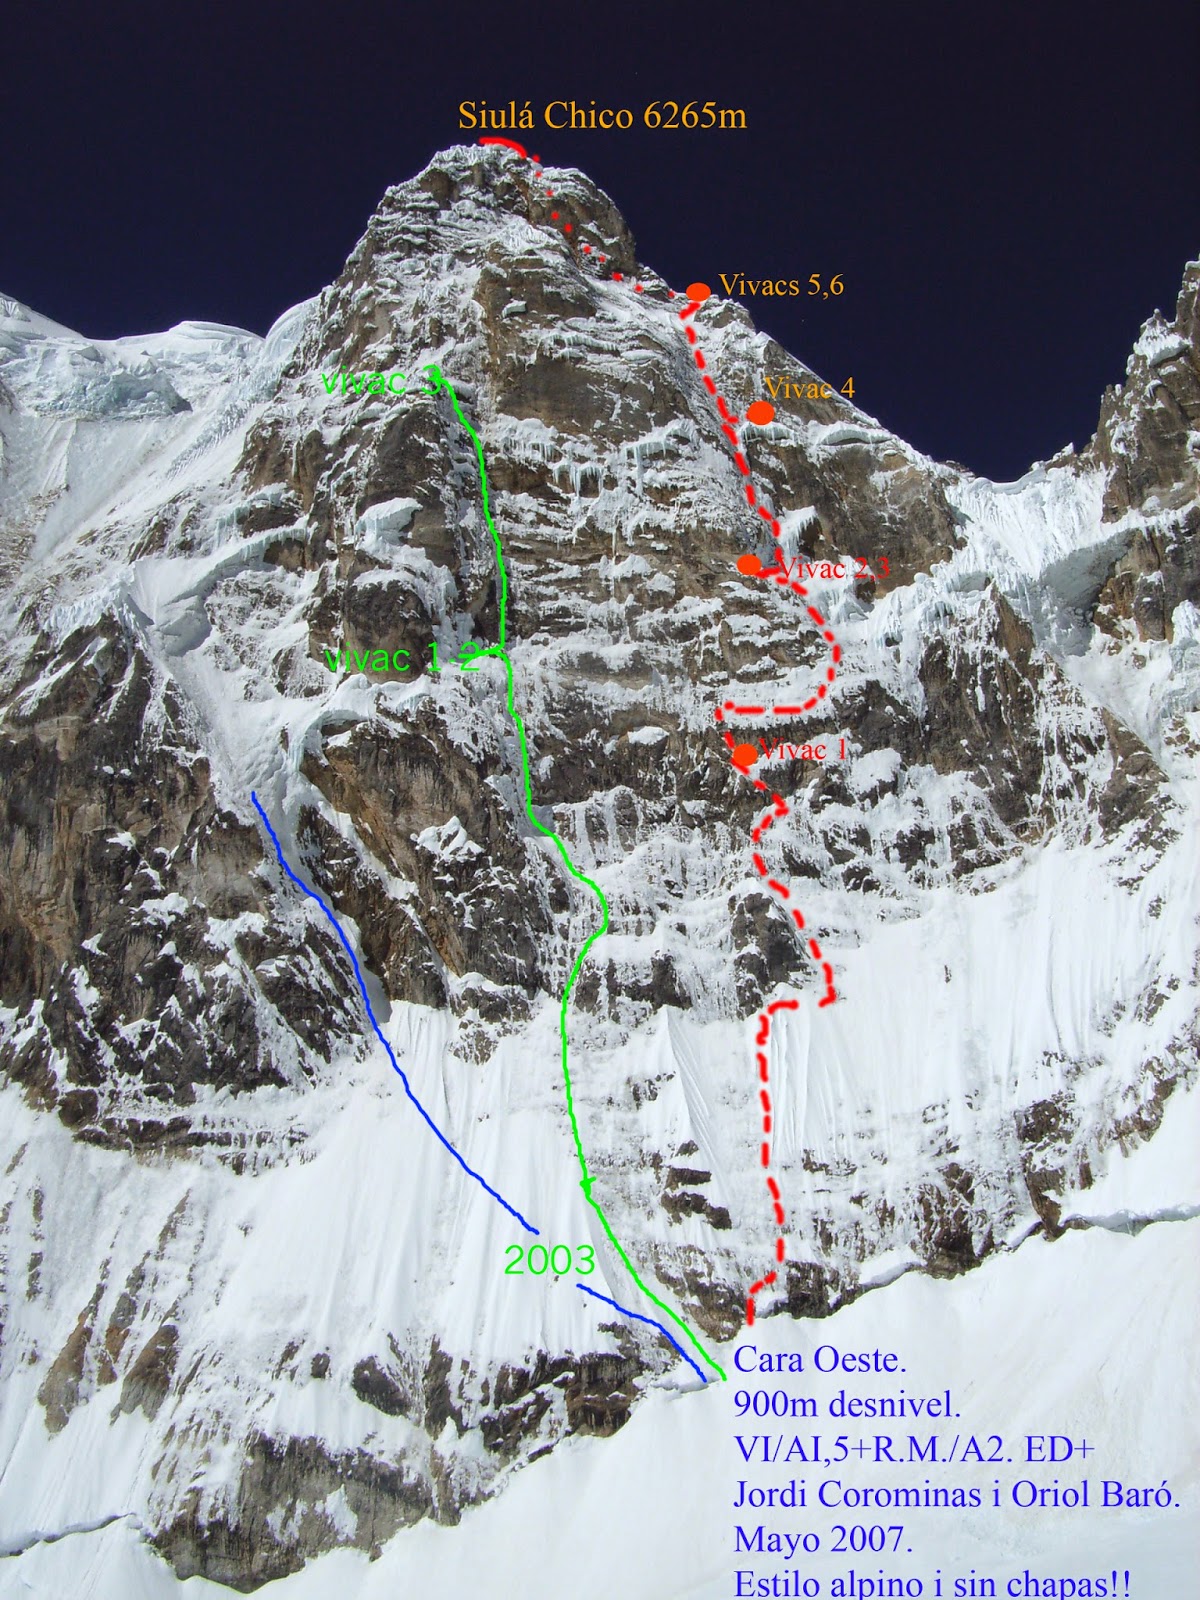 первопрохождение нового маршрута "Looking for the Void" по Западной стене шеститысячника Сиула Чико (Siula Chico, 6265 м). 